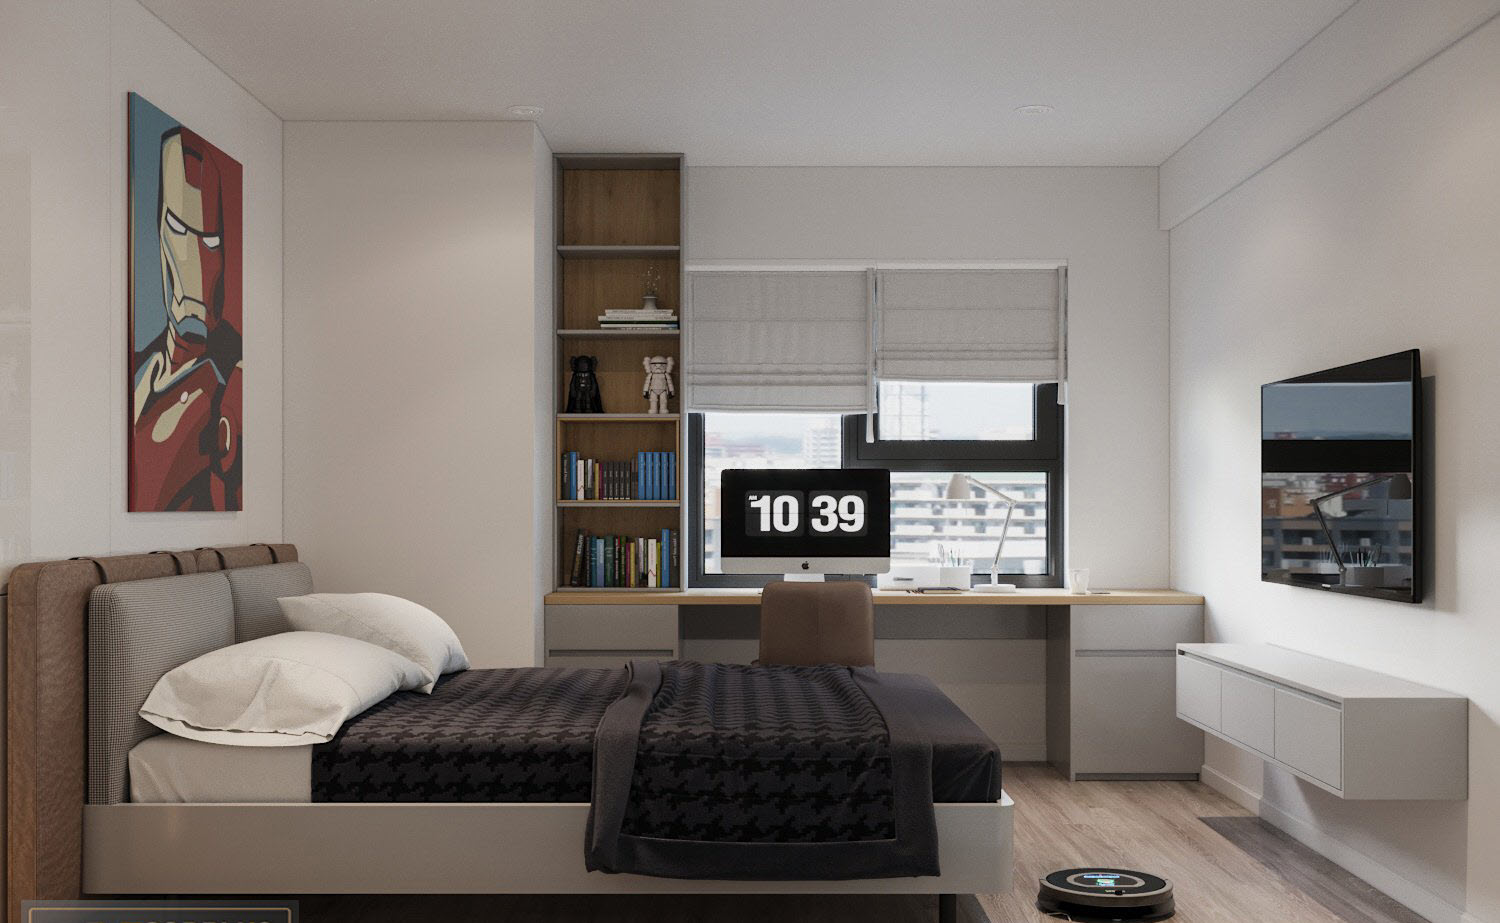 Chỉ với bức tranh điểm nhấn đầu giường tông màu ấm áp, phòng ngủ nhỏ trong căn hộ 120m2 trở nên ấn tượng hơn, hút mắt hơn.